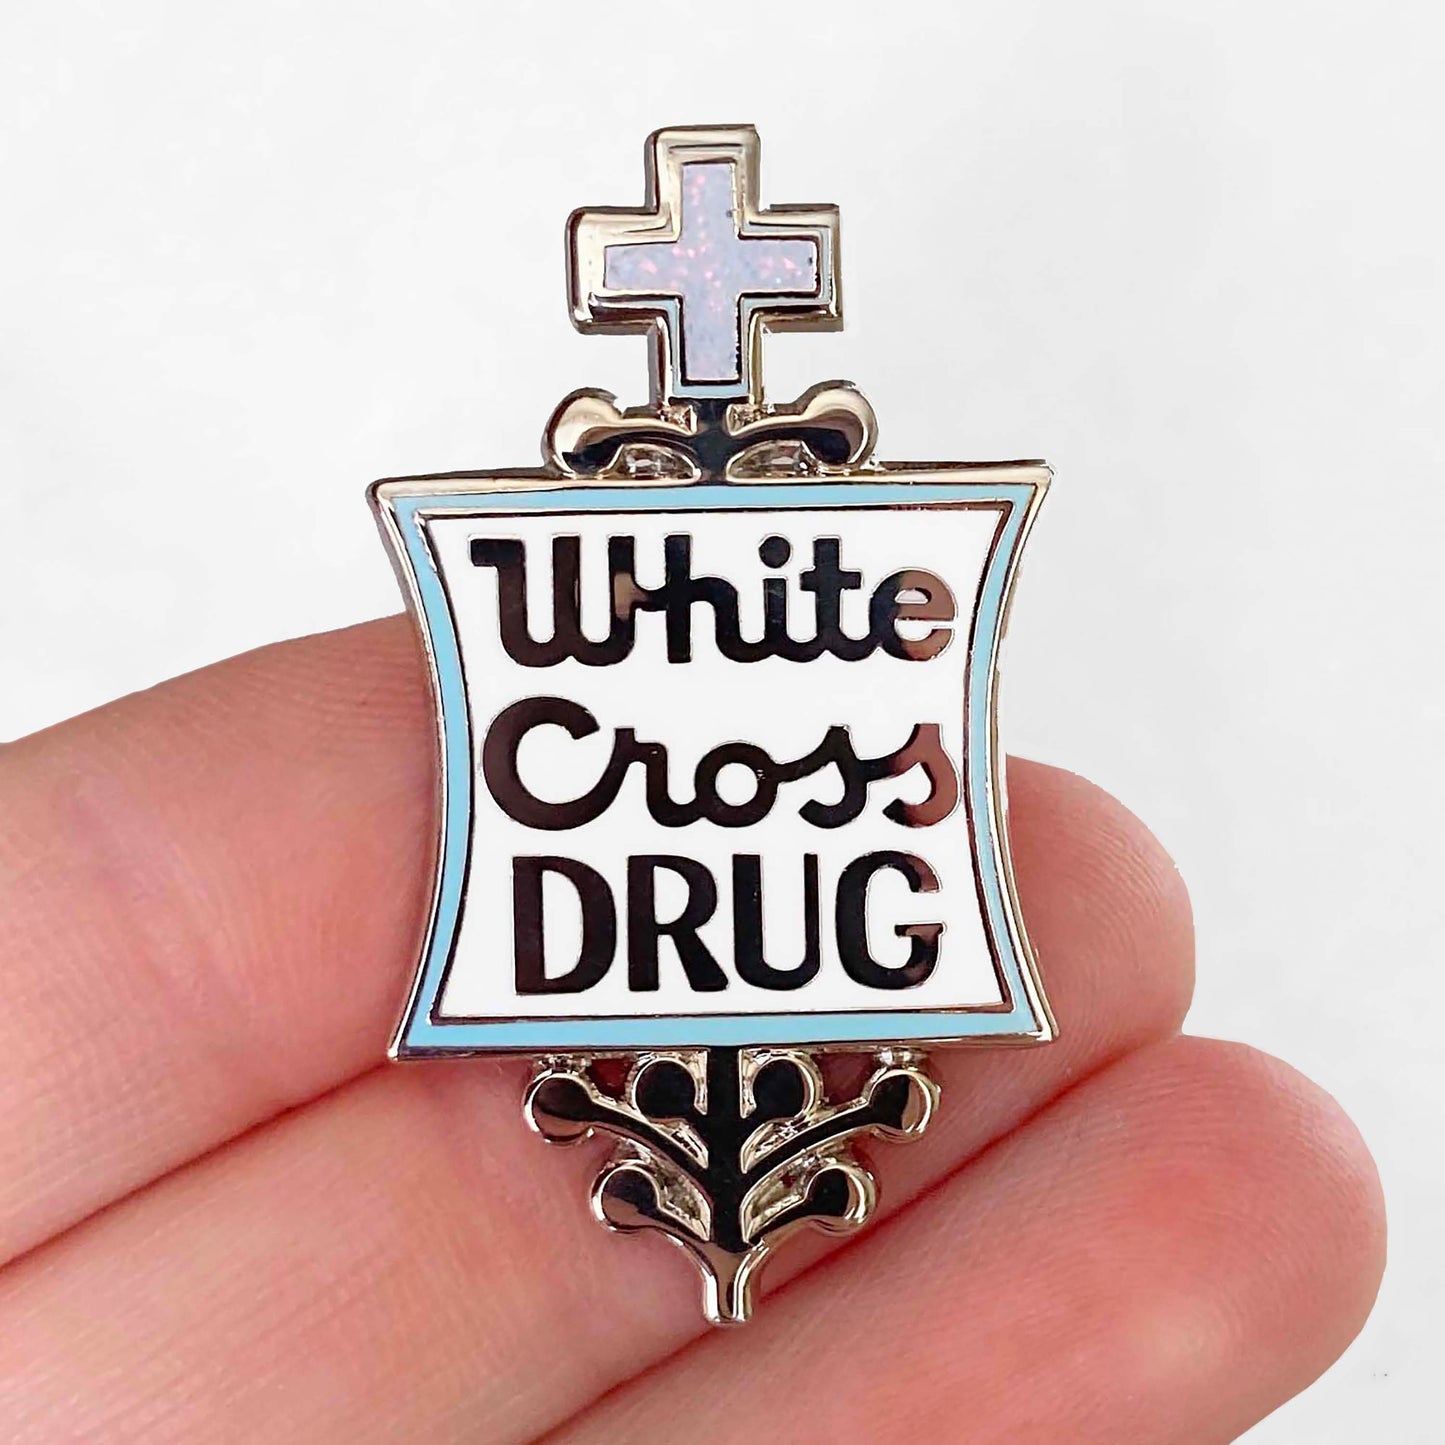 White Cross Drugs